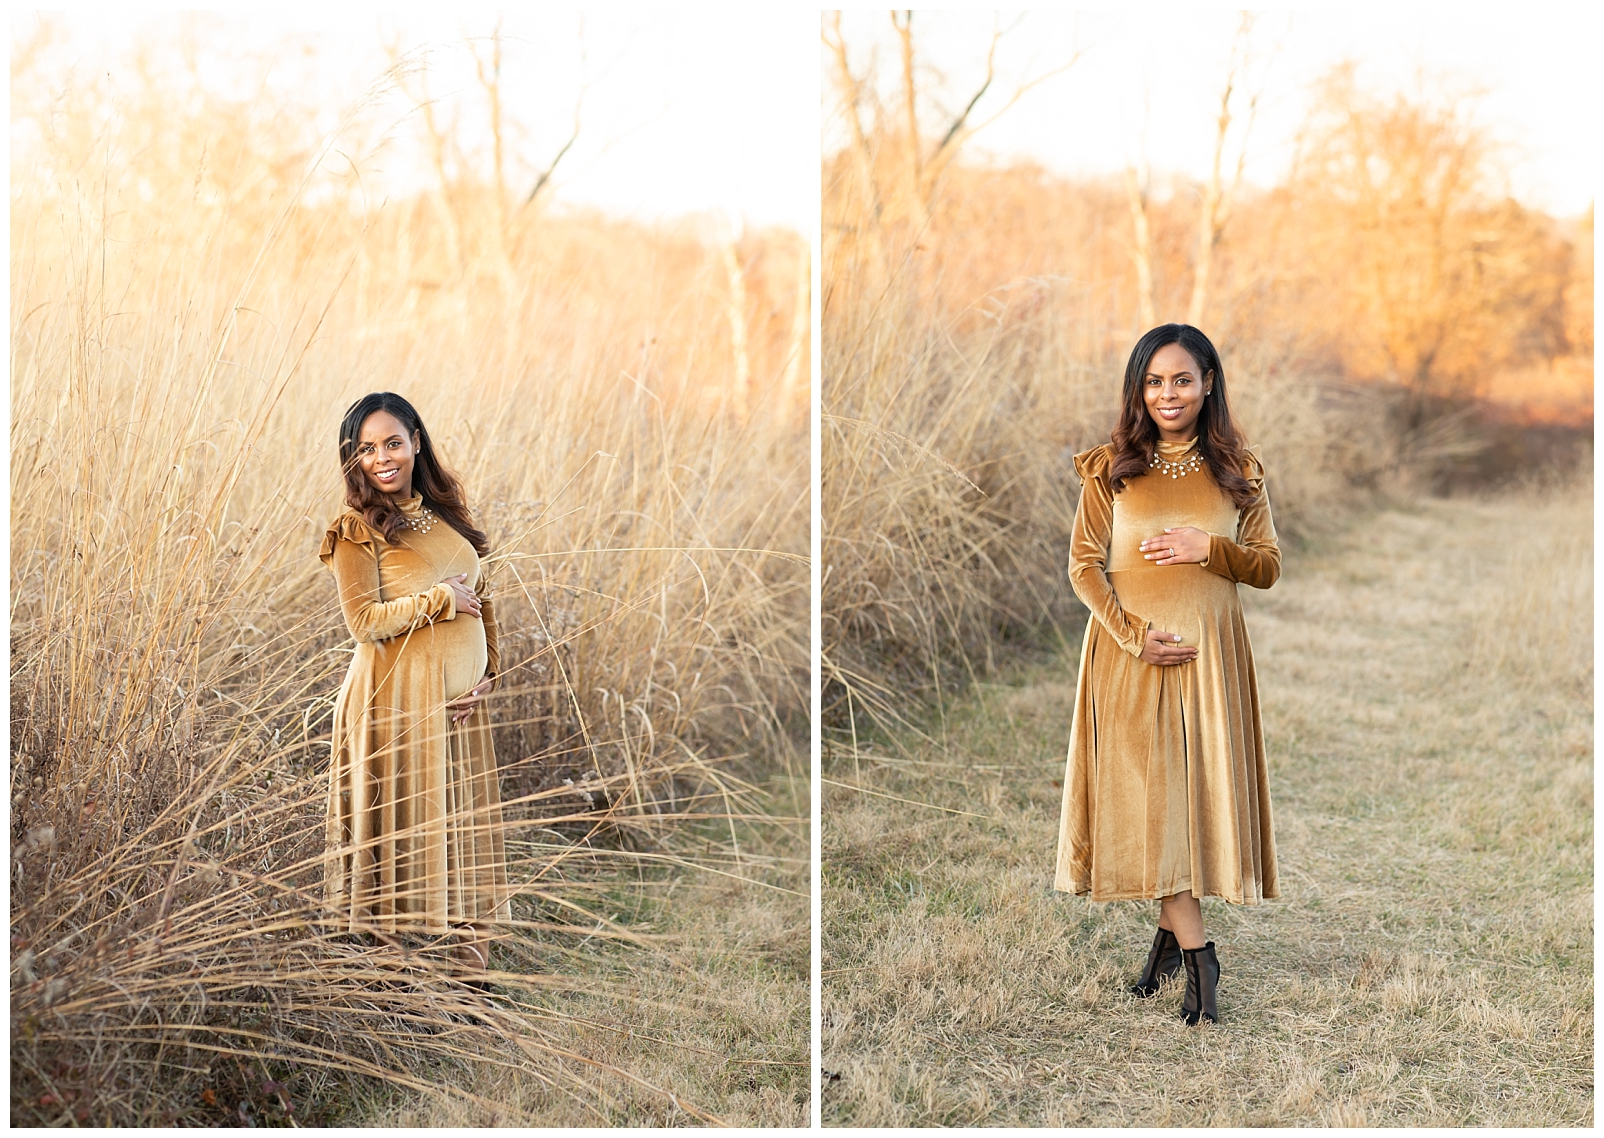 Lady wearing a golden dress in a field